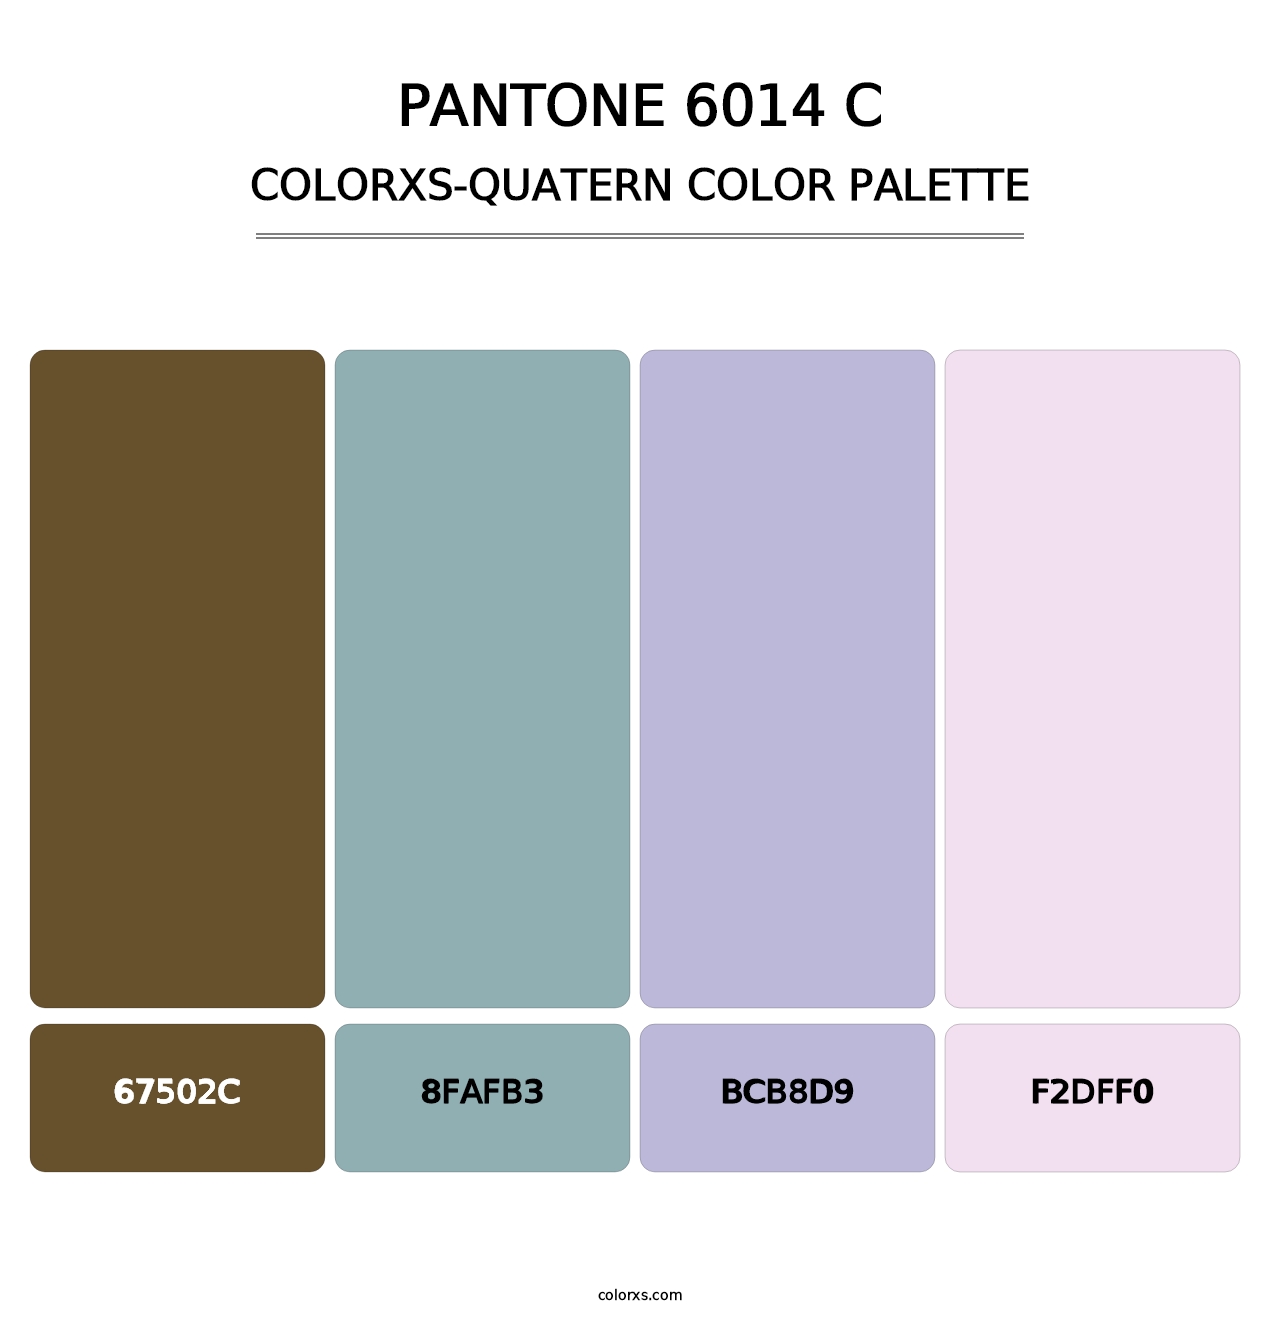 PANTONE 6014 C - Colorxs Quatern Palette